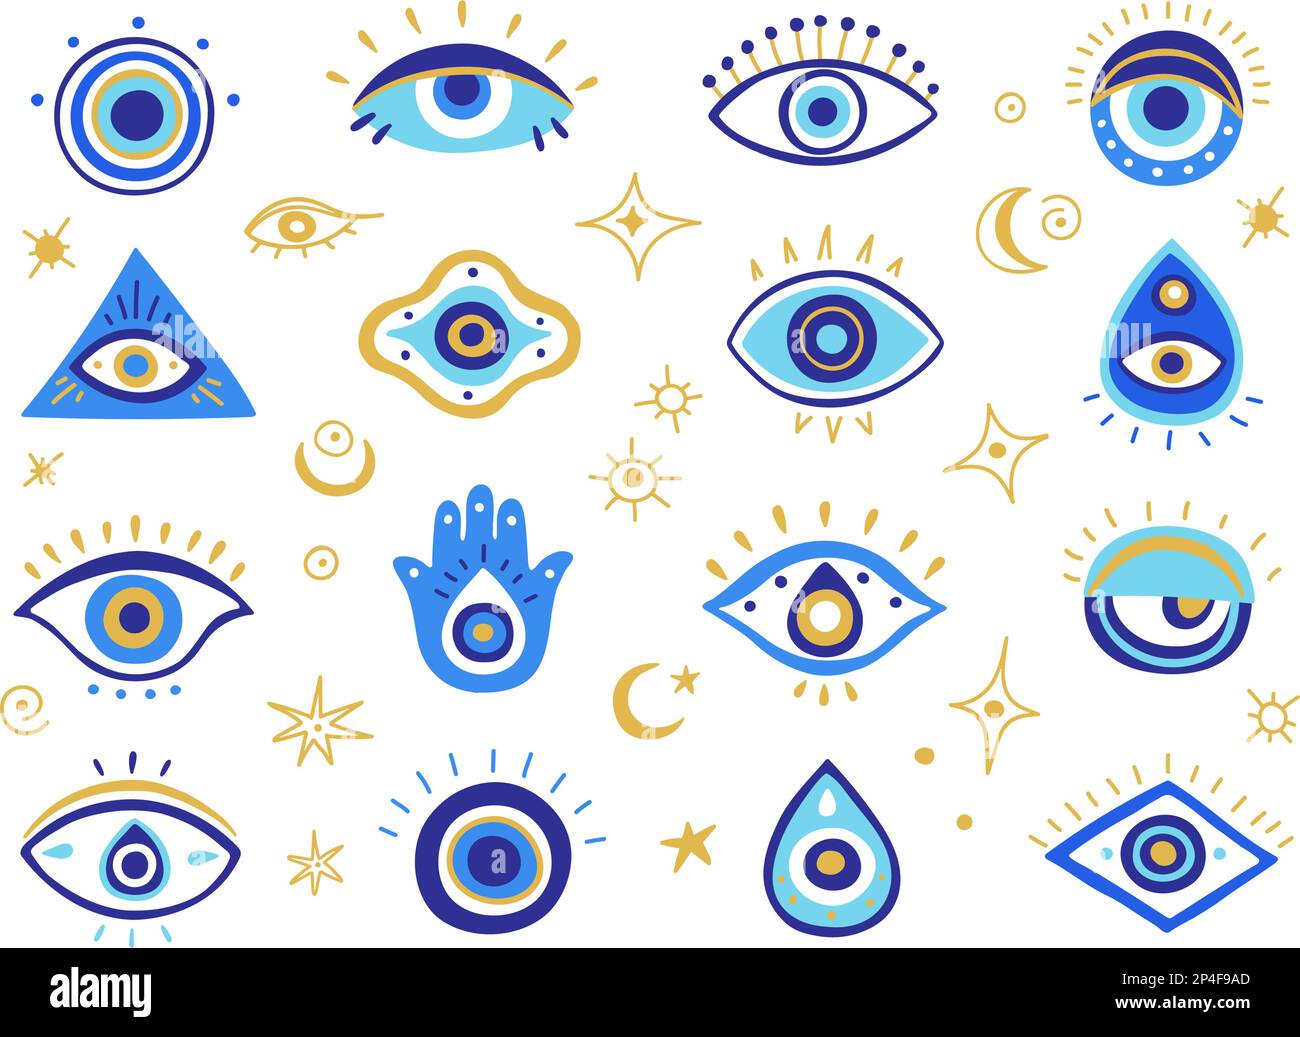 Böse Augensymbole. Mystische griechische und türkische Augen mit bösartiger Blendung, spiritueller hamsa-Hand und magischem Amulett-Vektorset Stock Vektor